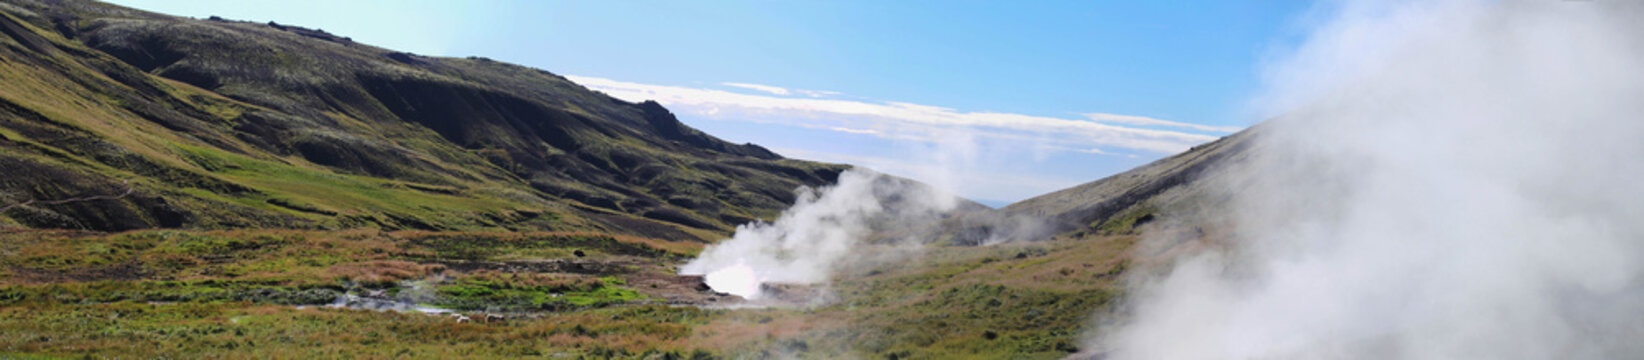 Island - Landschaftspanorama mit heißen, dampfenden Quellen